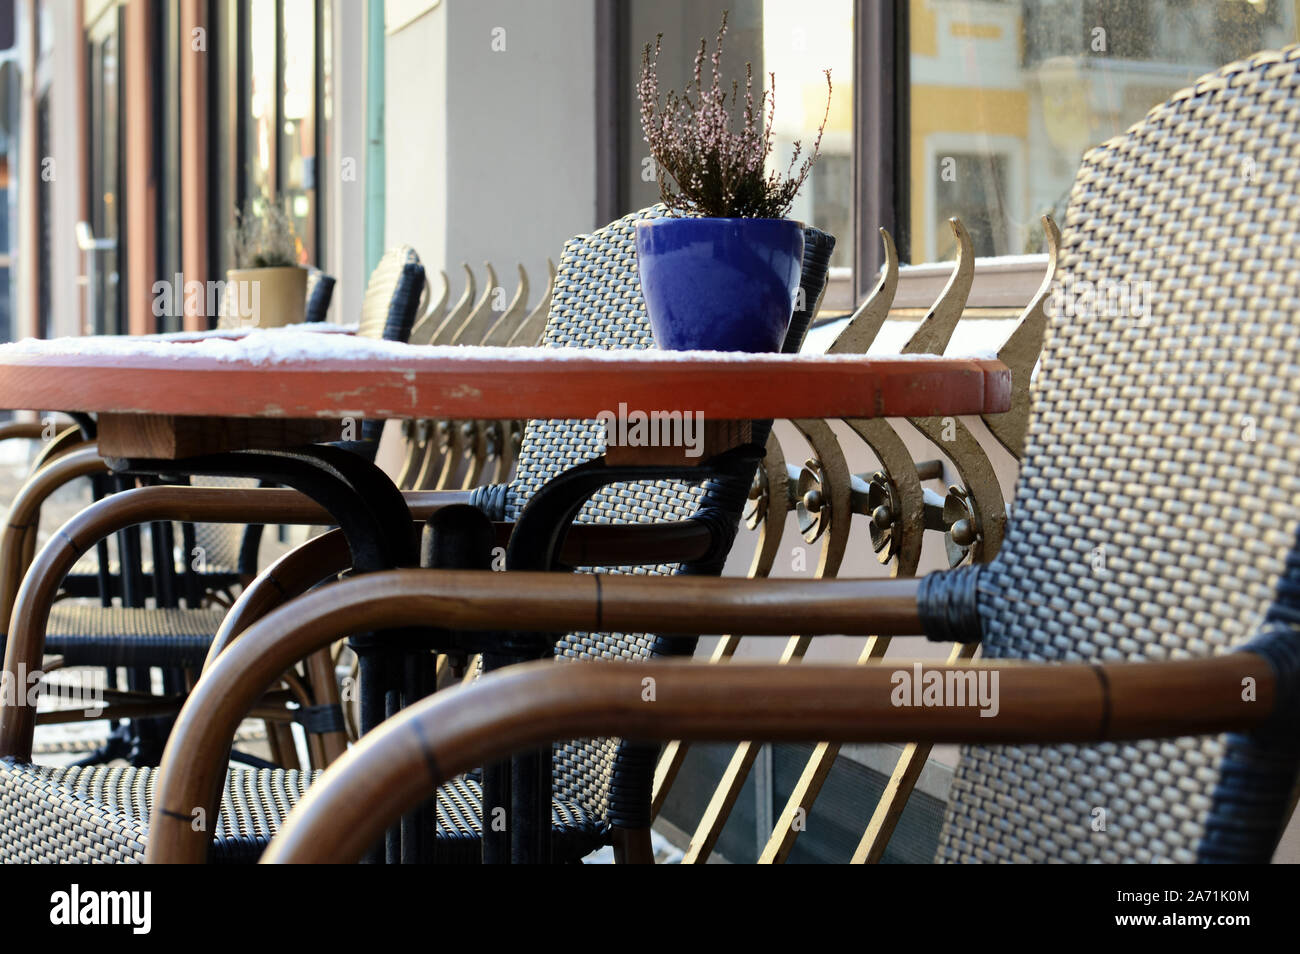 Hiver vide street cafe, le harfang table avec chaises en bois sur un jour froid, le petit déjeuner du matin, concept de tourisme d'hiver en saison froide, météo Banque D'Images